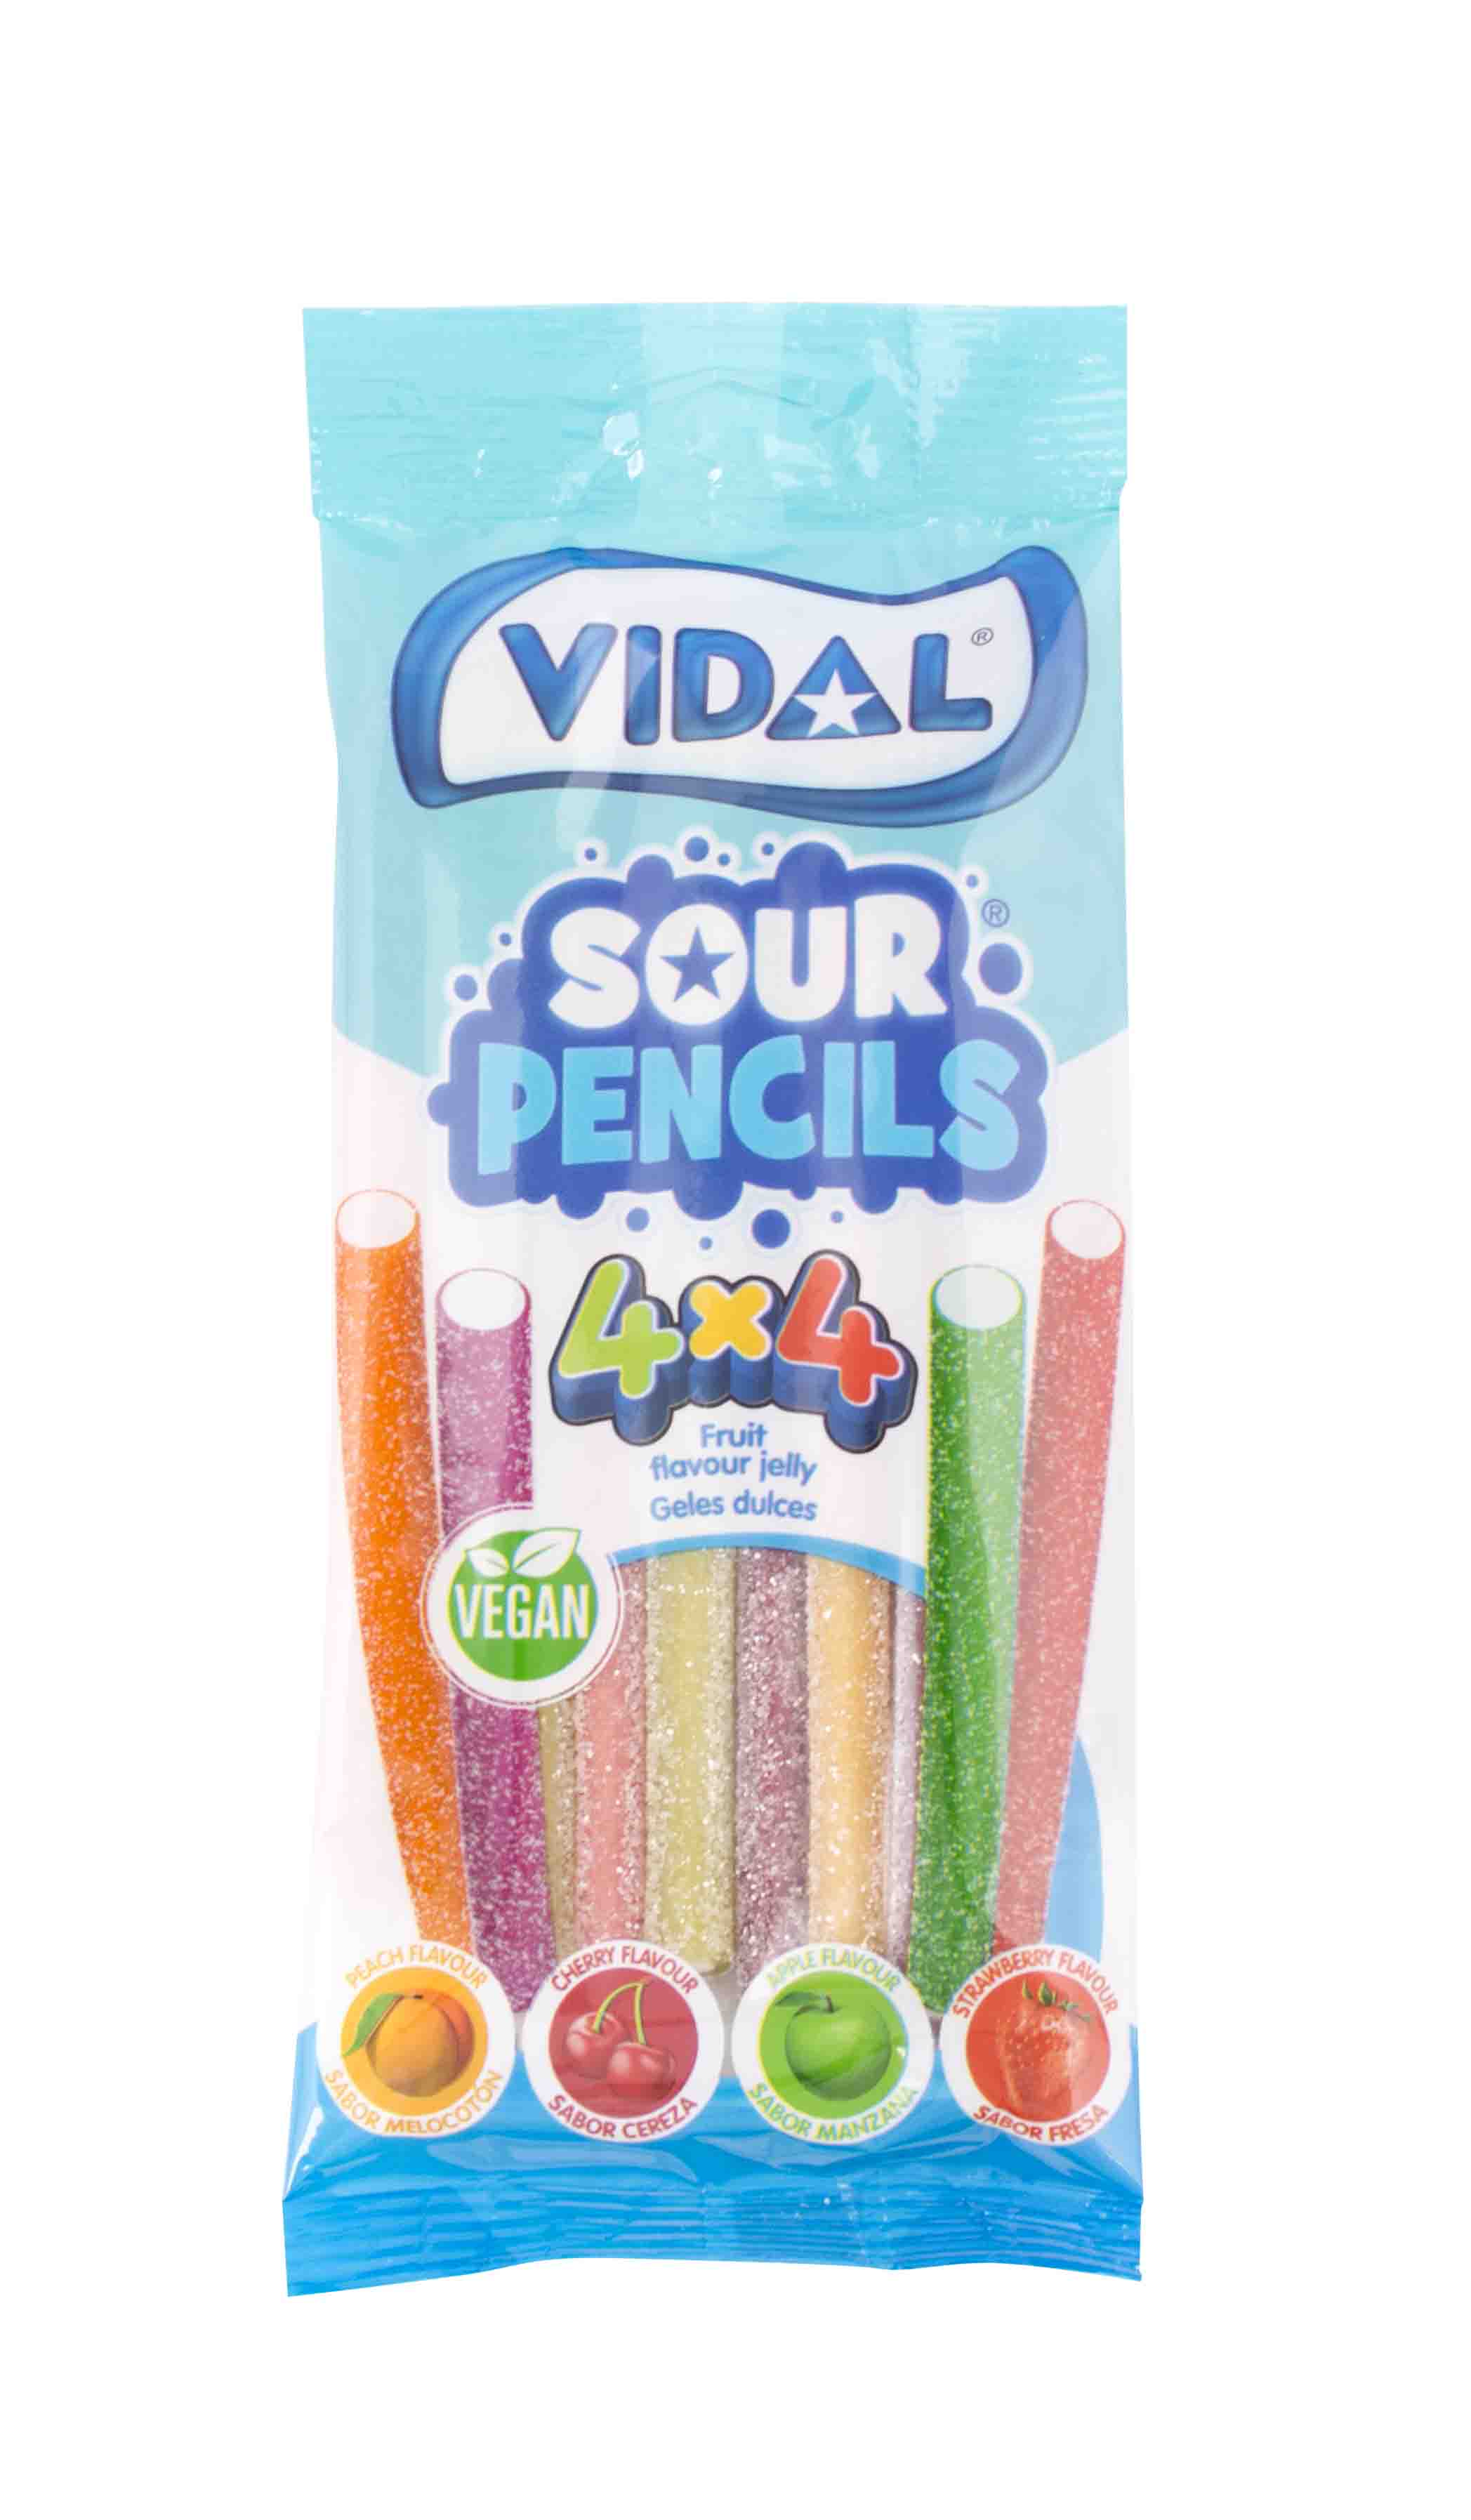 Sour Pencils 4x4 bag - 4 příchutě kyselých pendreků 100g